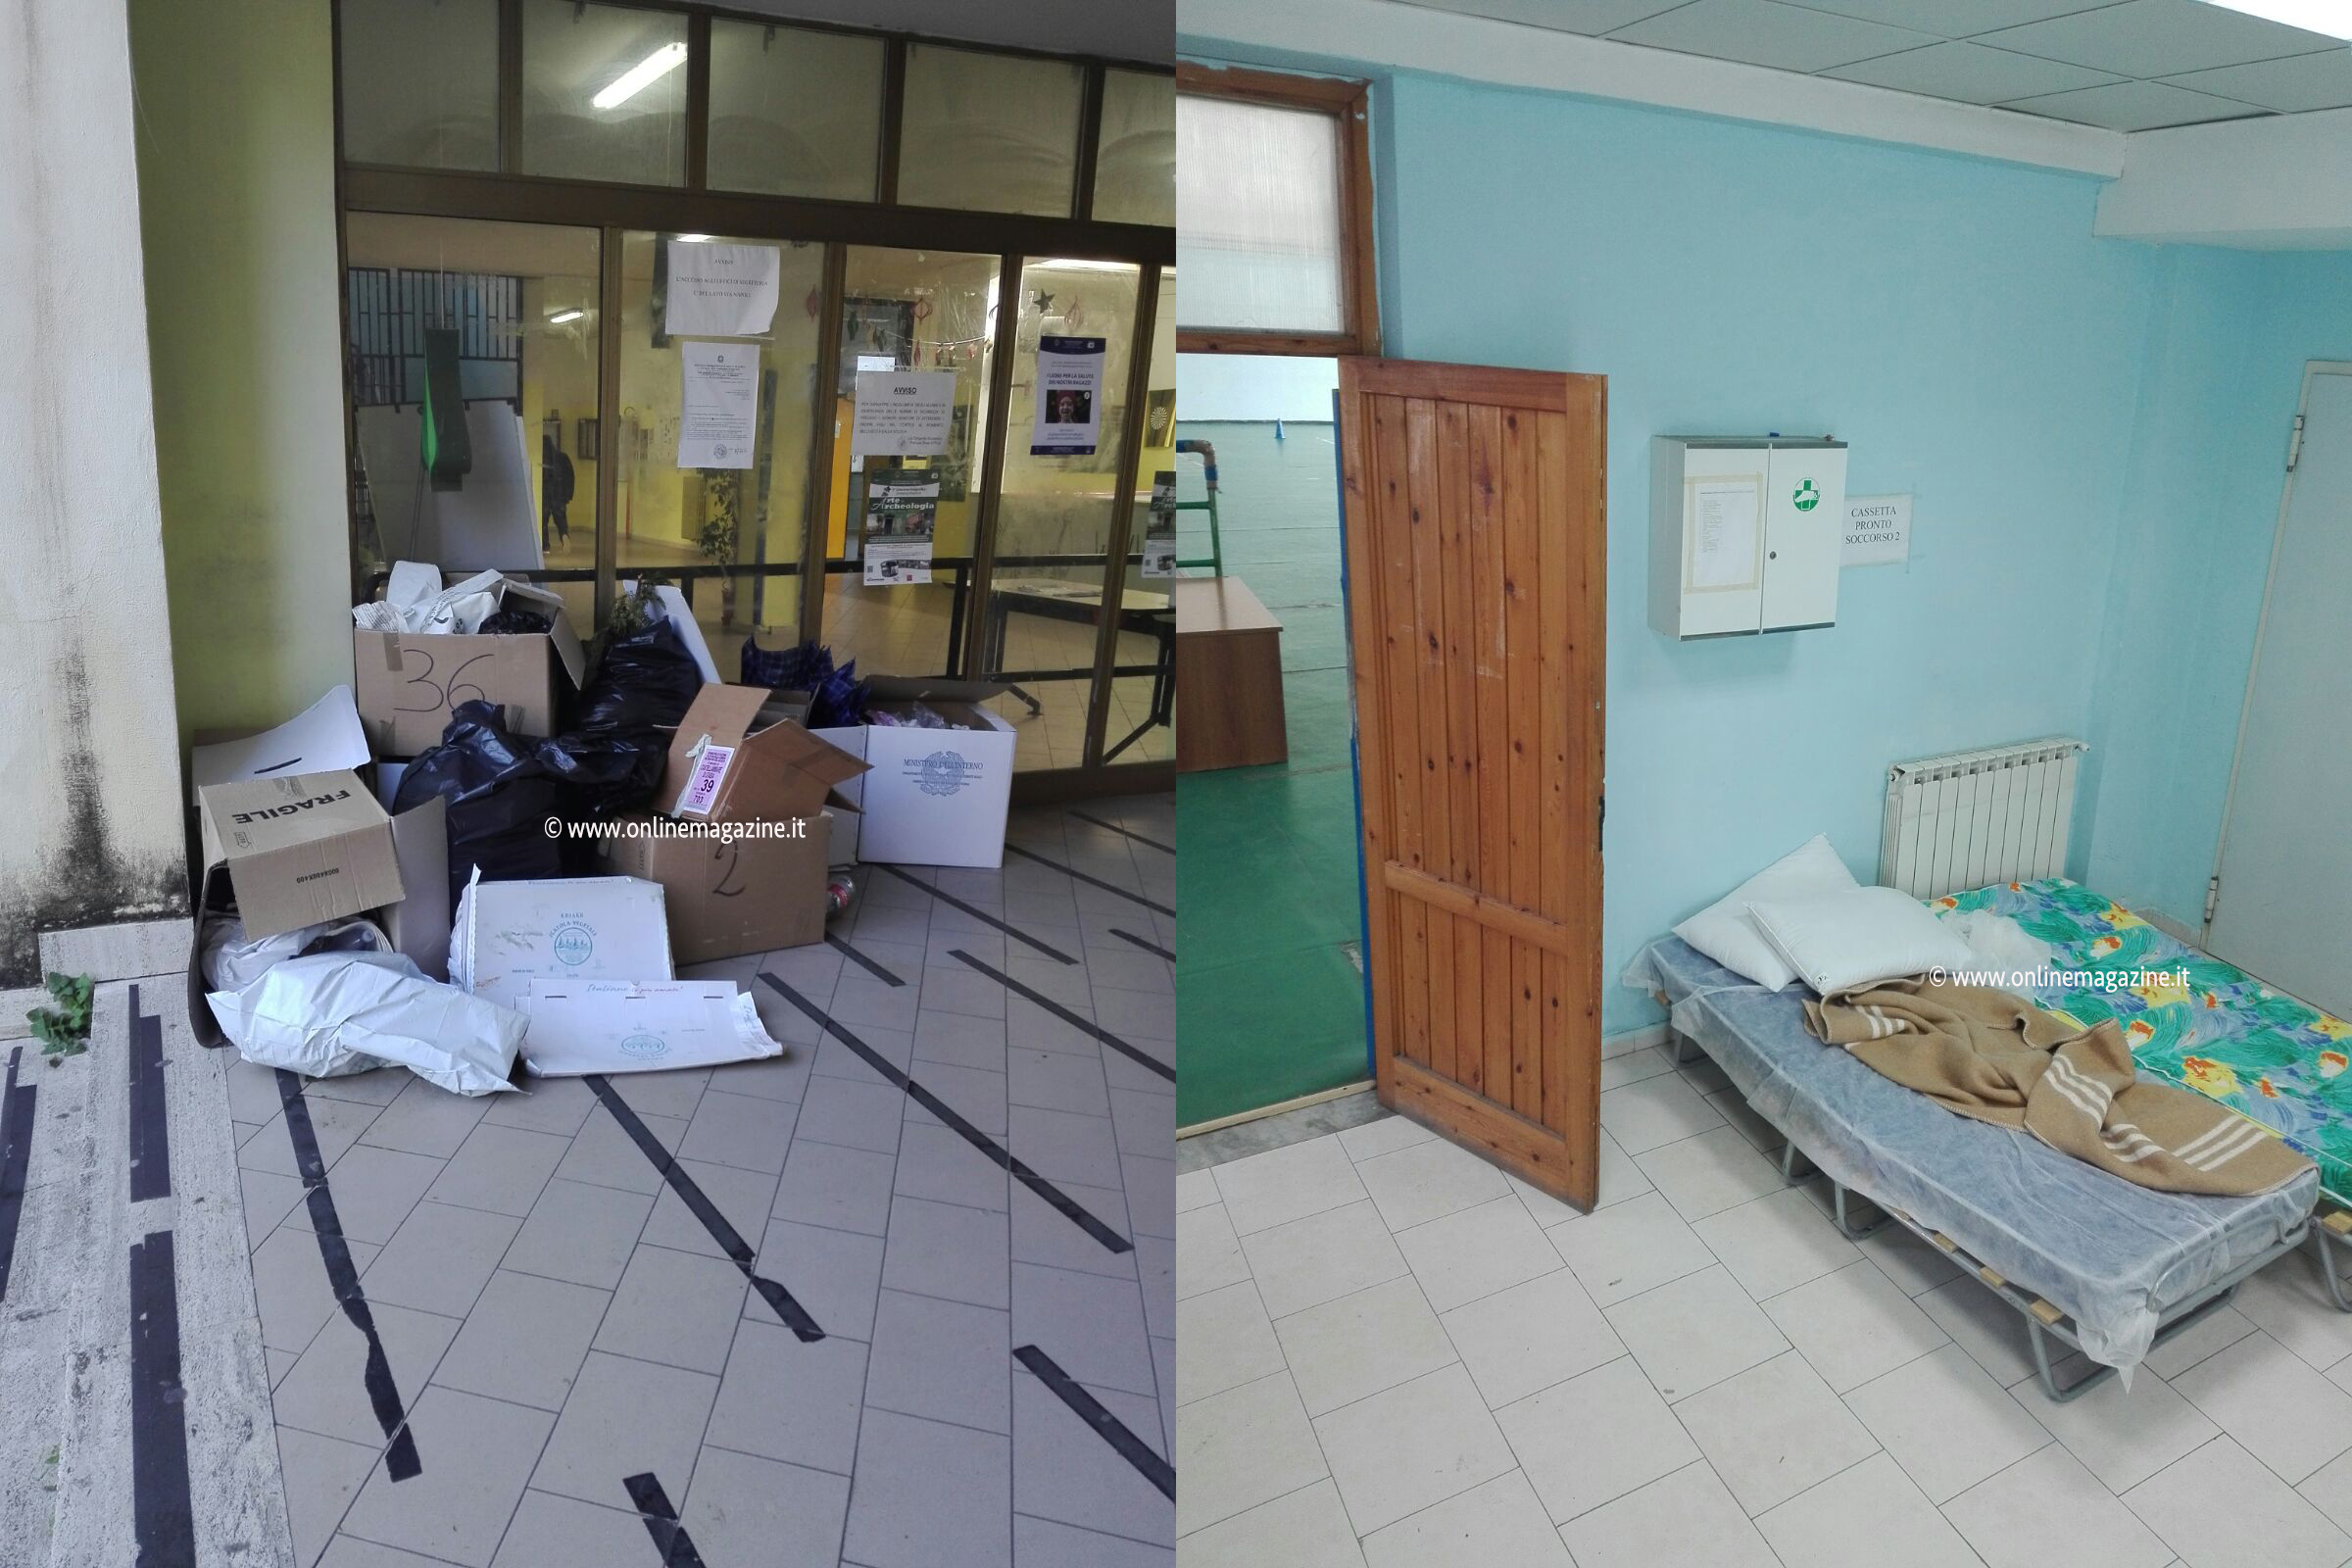 Castellammare. Spazzatura e aule sporche post elezioni: alunni e prof fanno le pulizie